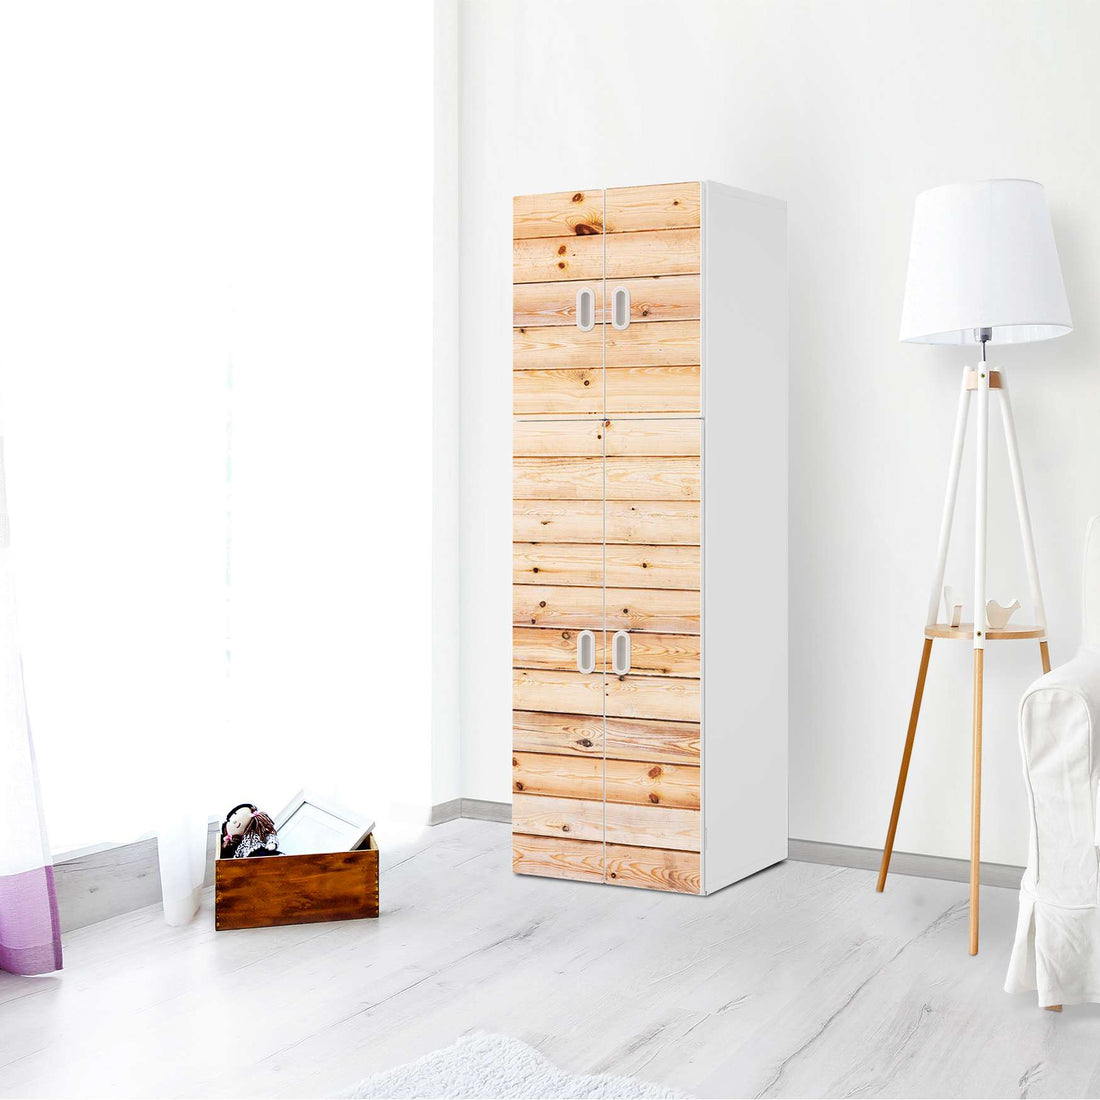 Selbstklebende Folie Bright Planks - IKEA Stuva / Fritids kombiniert - 2 große Türen und 2 kleine Türen - Kinderzimmer